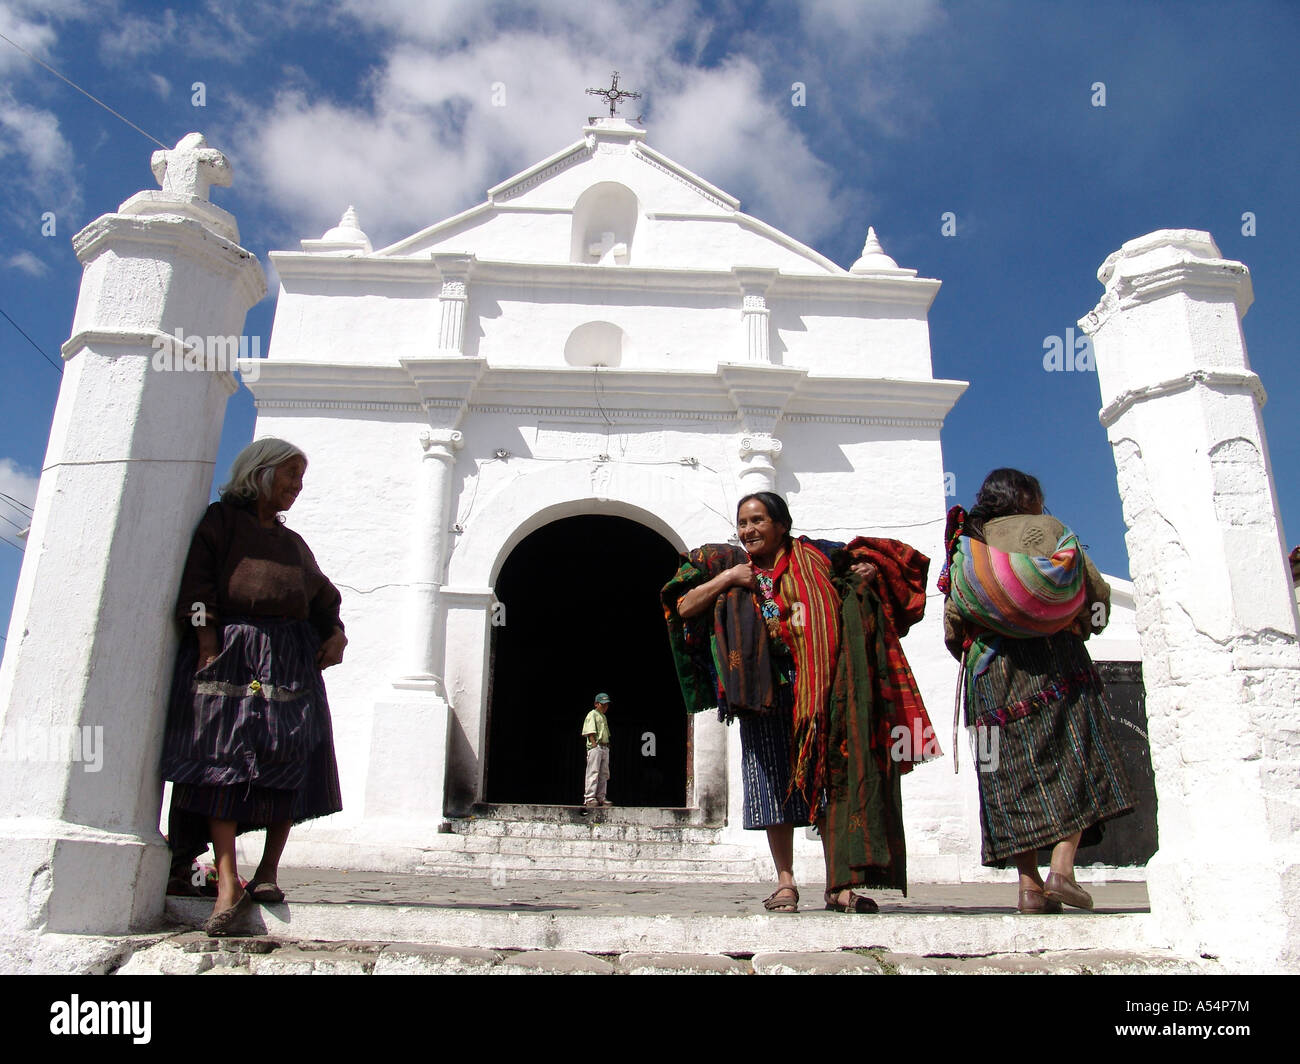 Painet1759 ip femmes guatemala église avant de Chichicastenango au pays en développement, de pays moins développés économiquement Banque D'Images